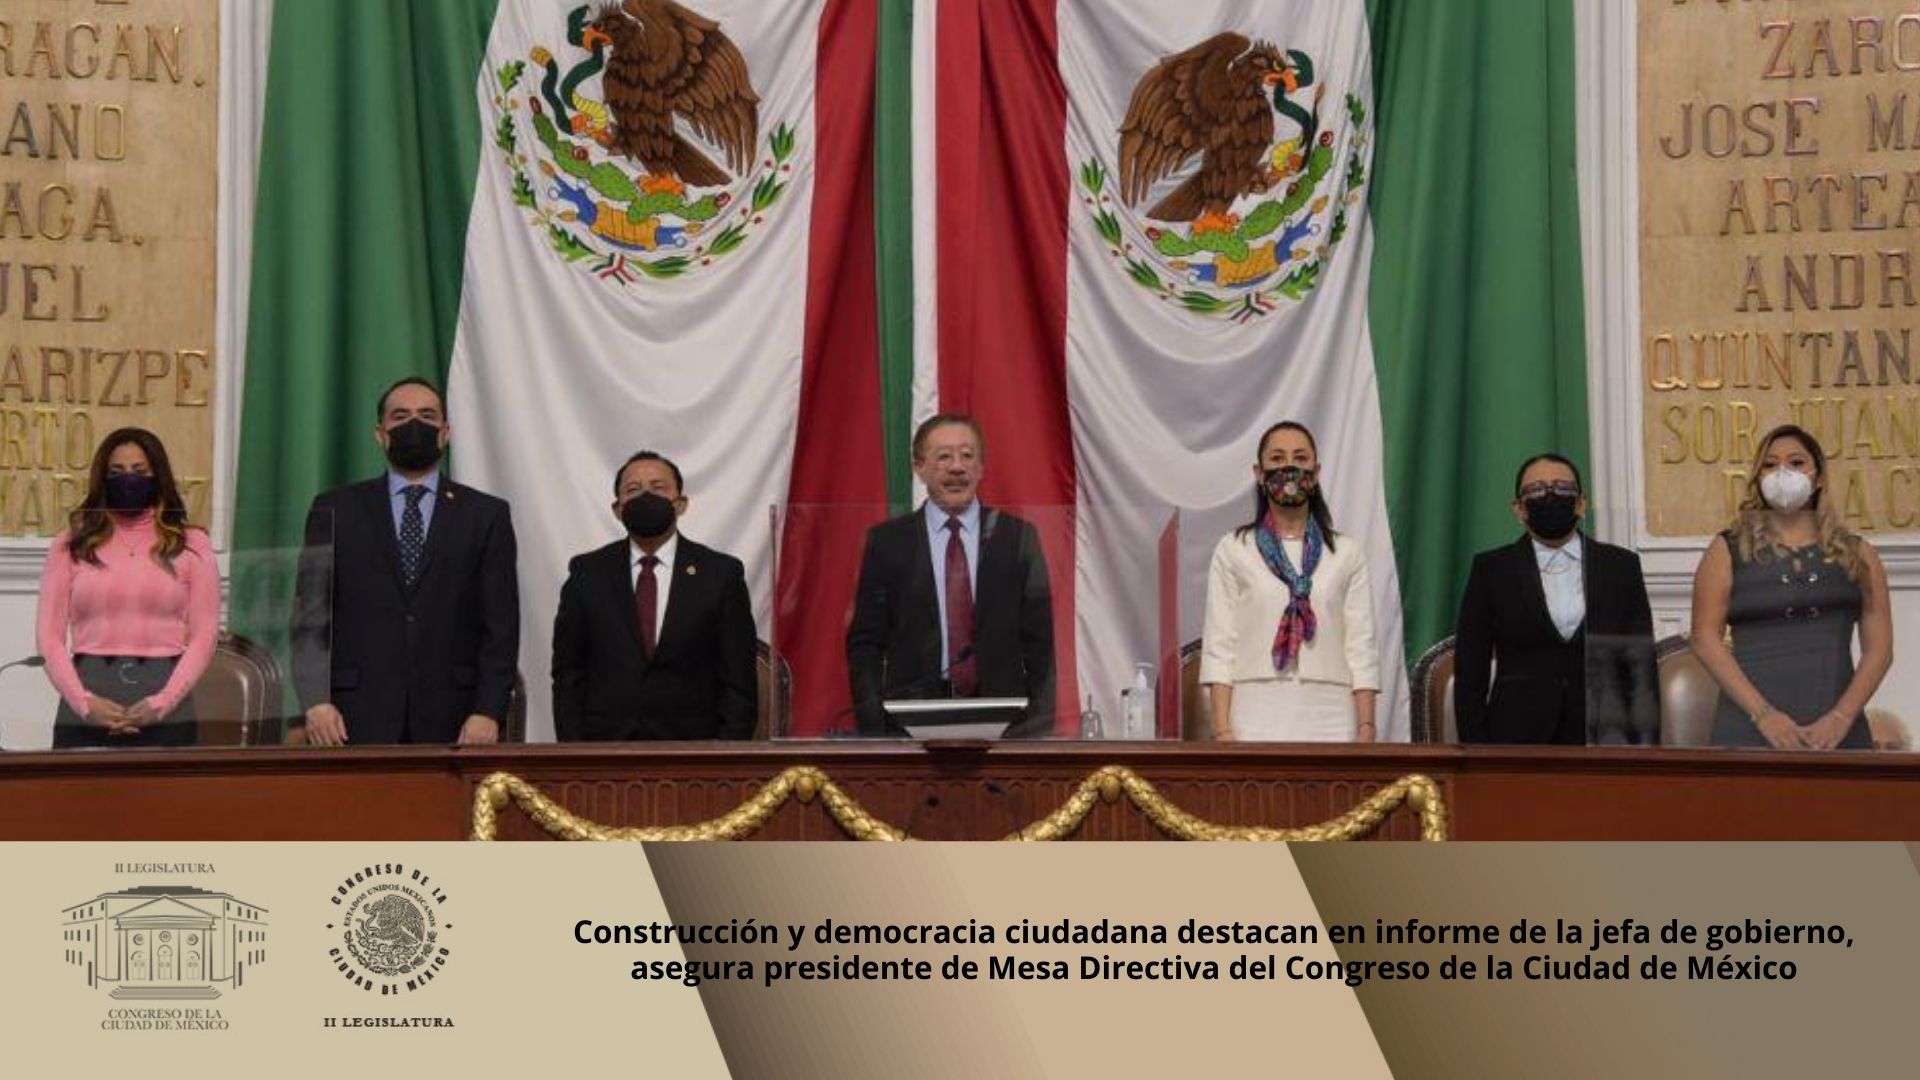 Construcción y democracia ciudadana destacan en informe de la jefa de gobierno, asegura presidente de Mesa Directiva del Congreso de la Ciudad de México